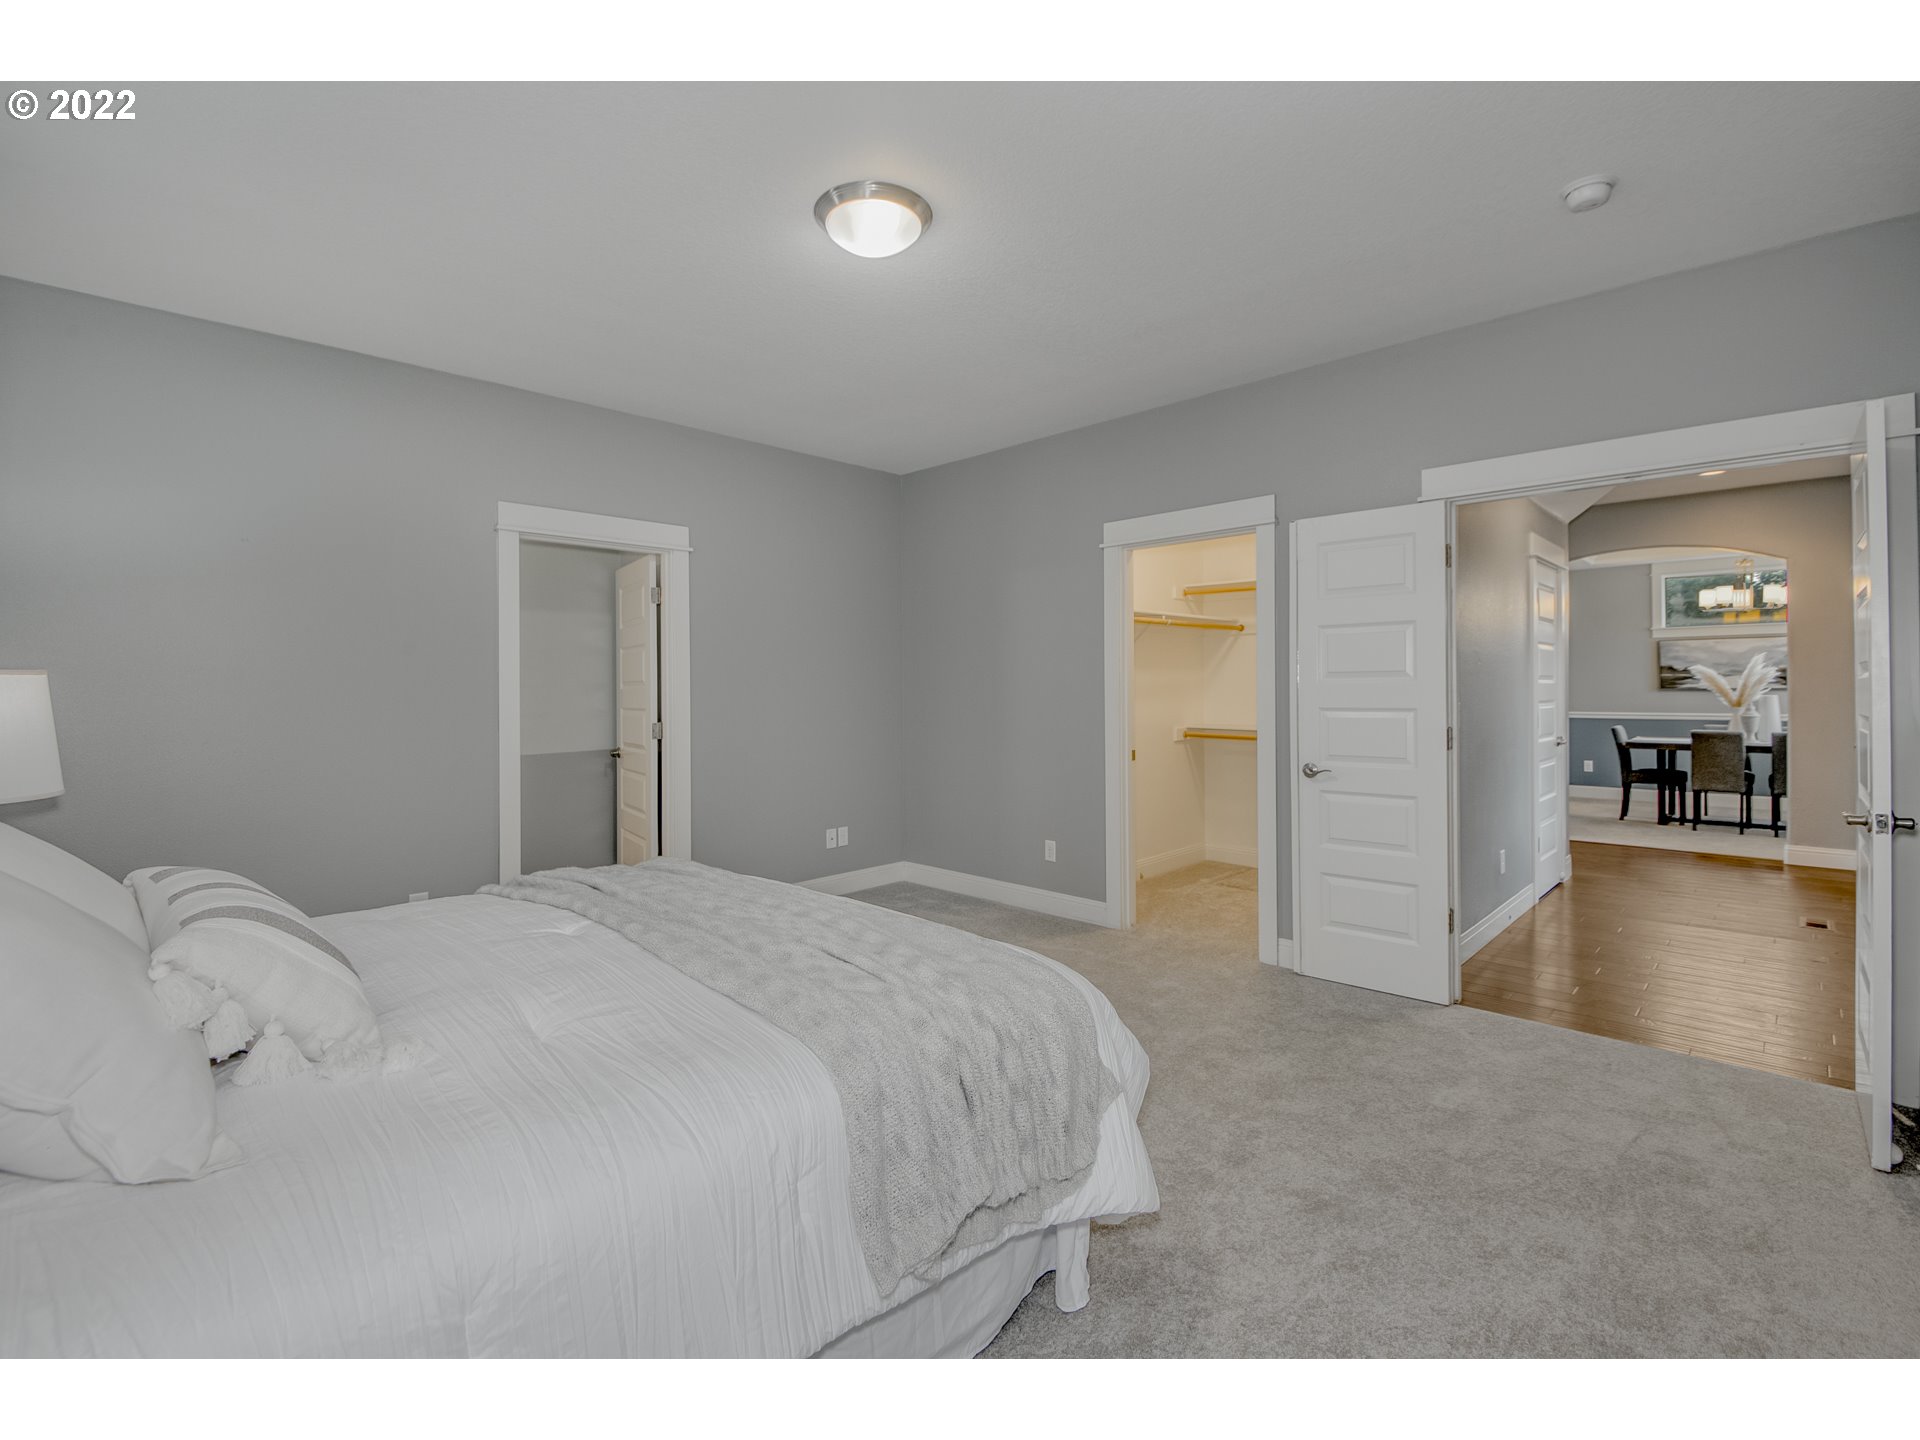 Owner's Suite Bedroom-Walk-In Closet